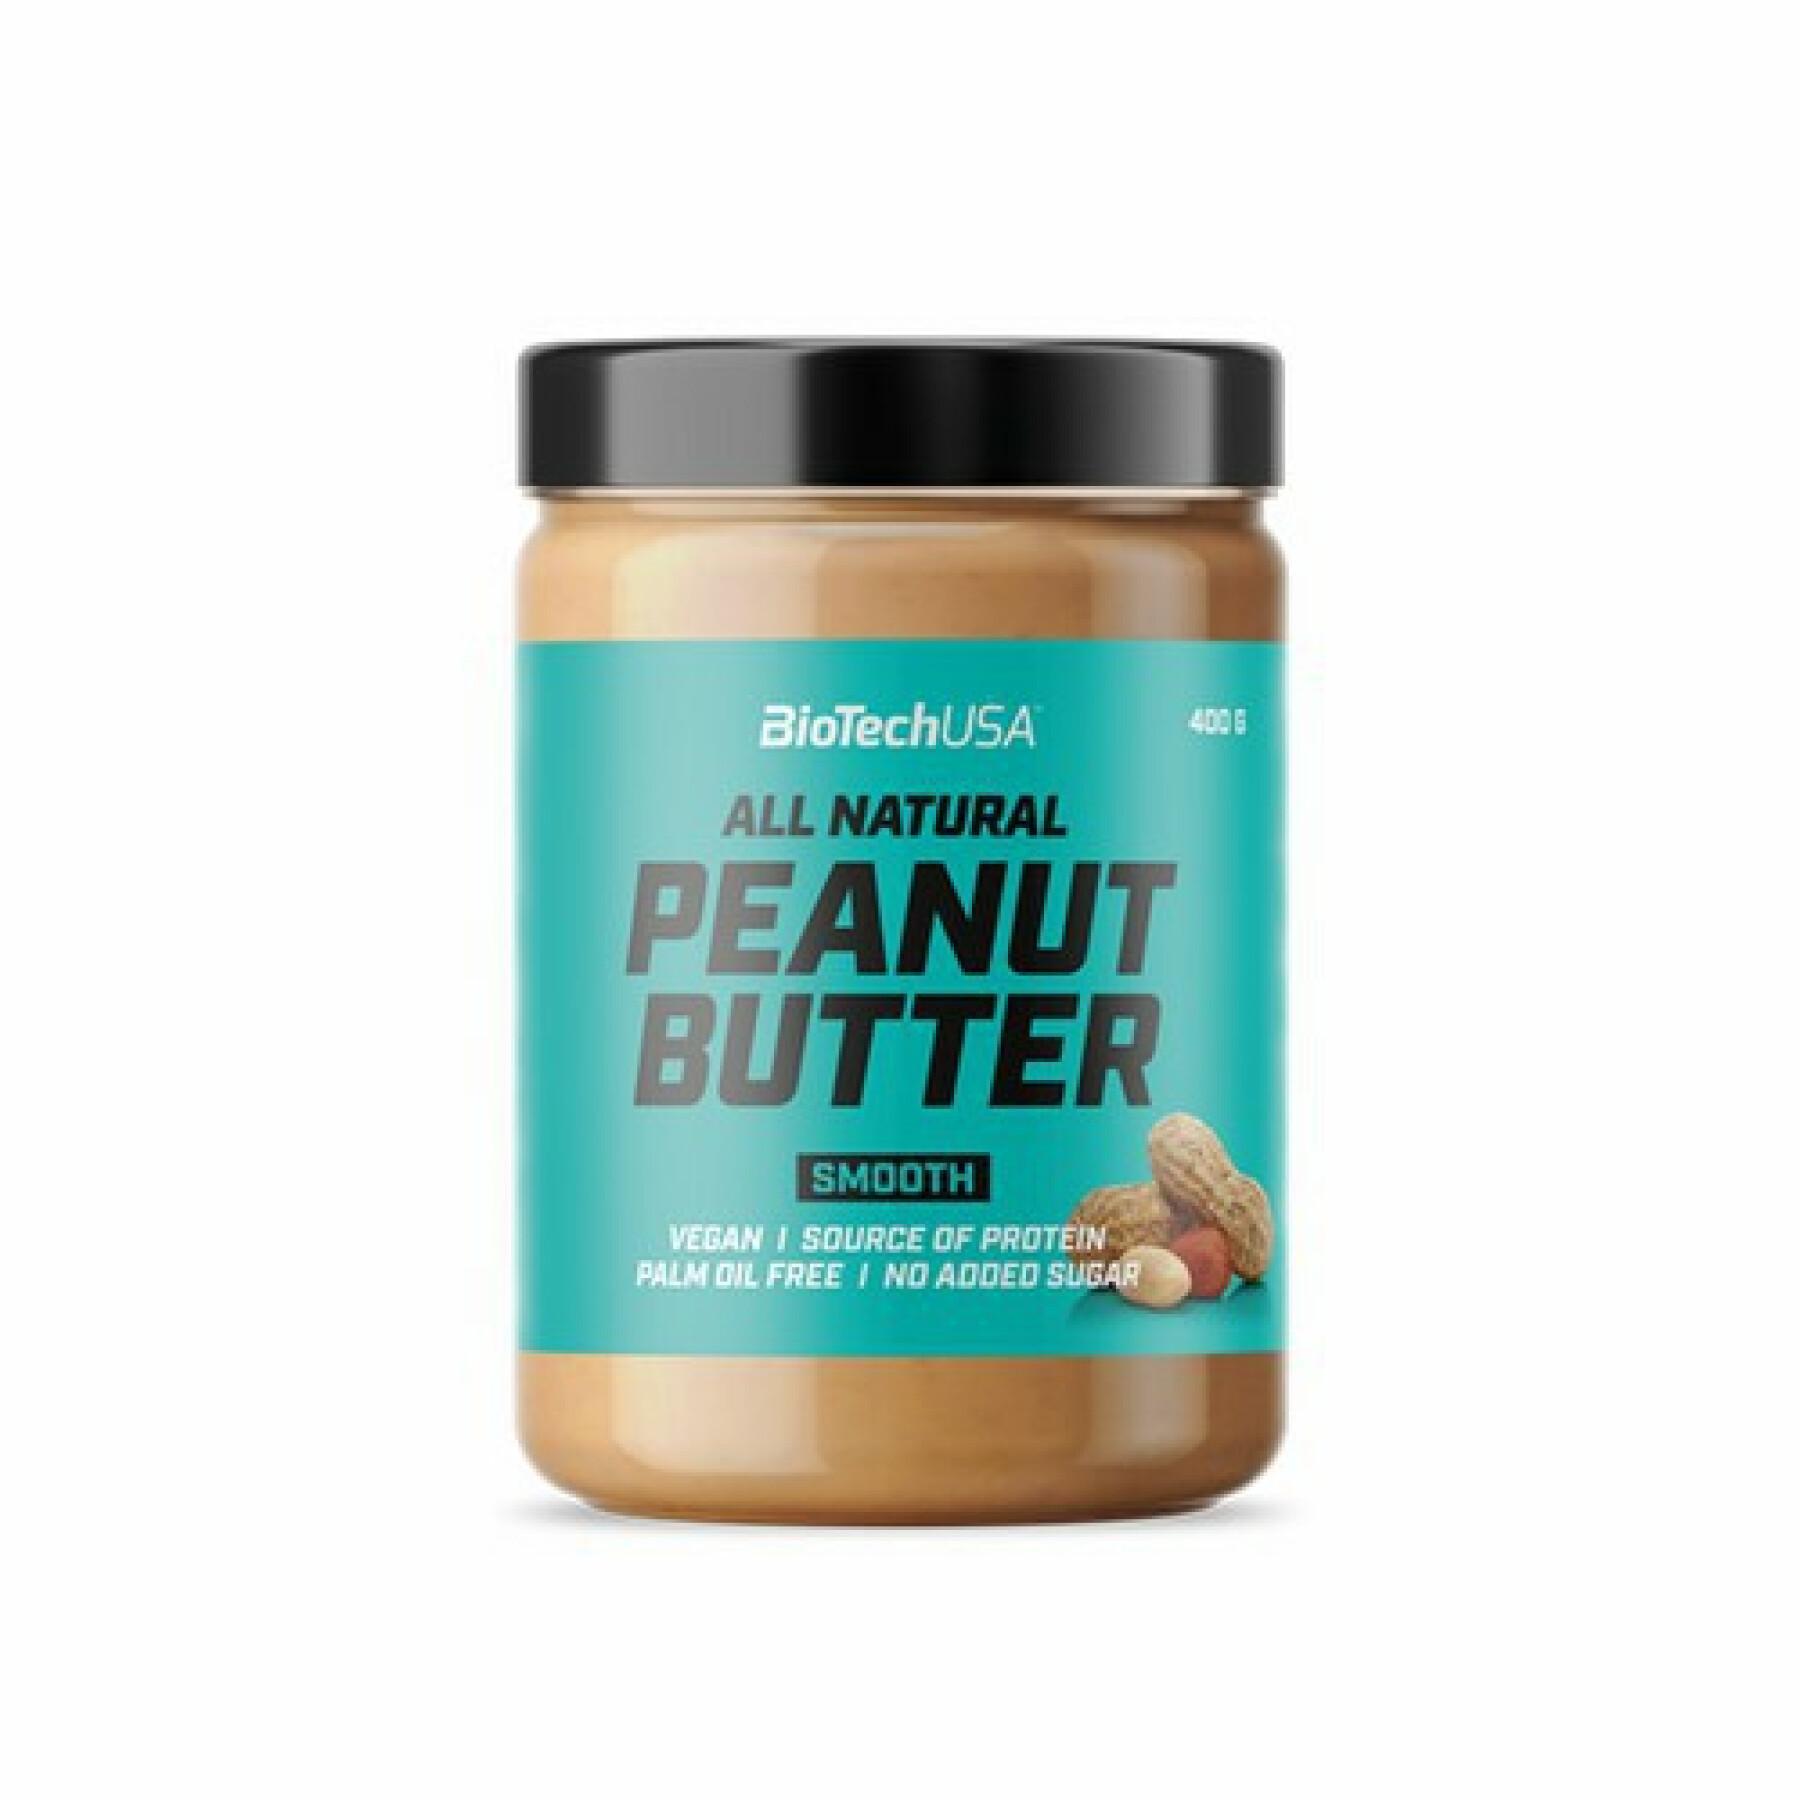 Peanut butter snack buckets Biotech USA - Crémeux – 400g